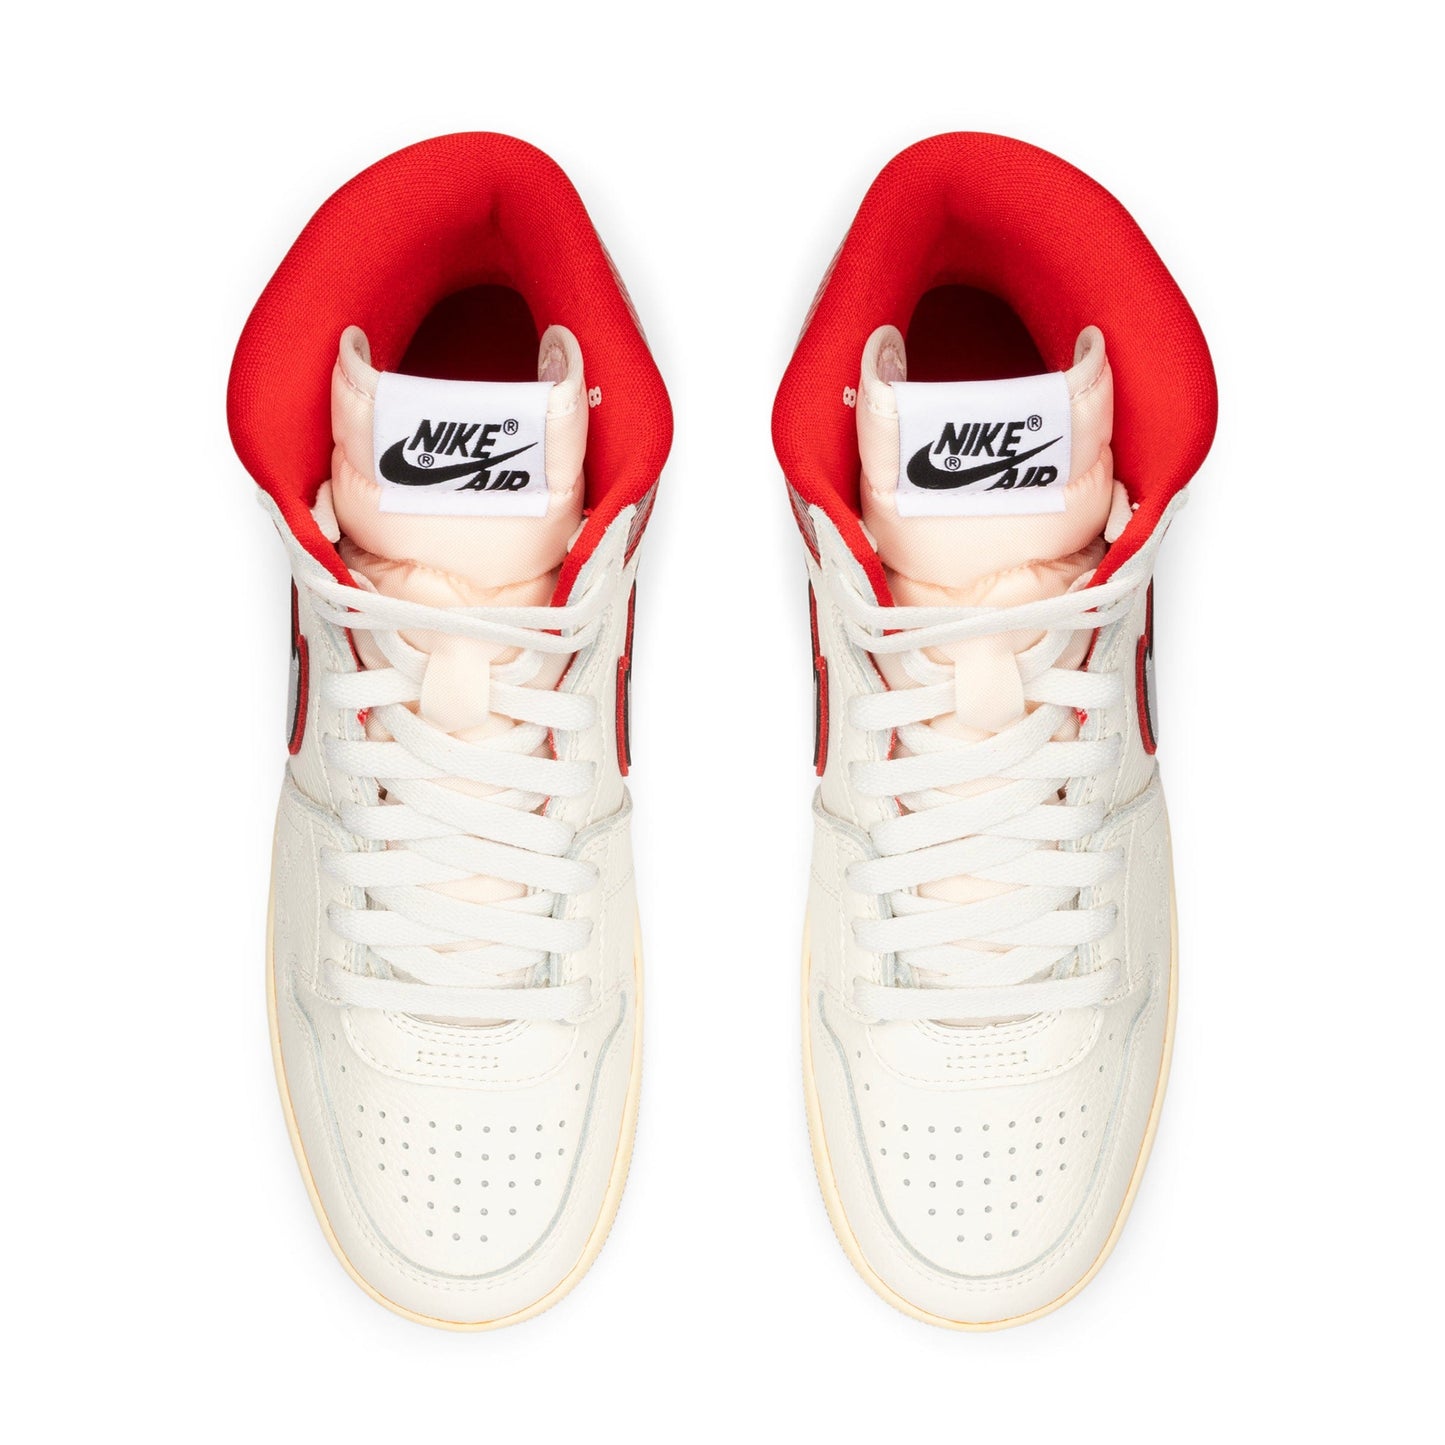 Nike Sneakers X AWAKE AIR SHIP PE SP